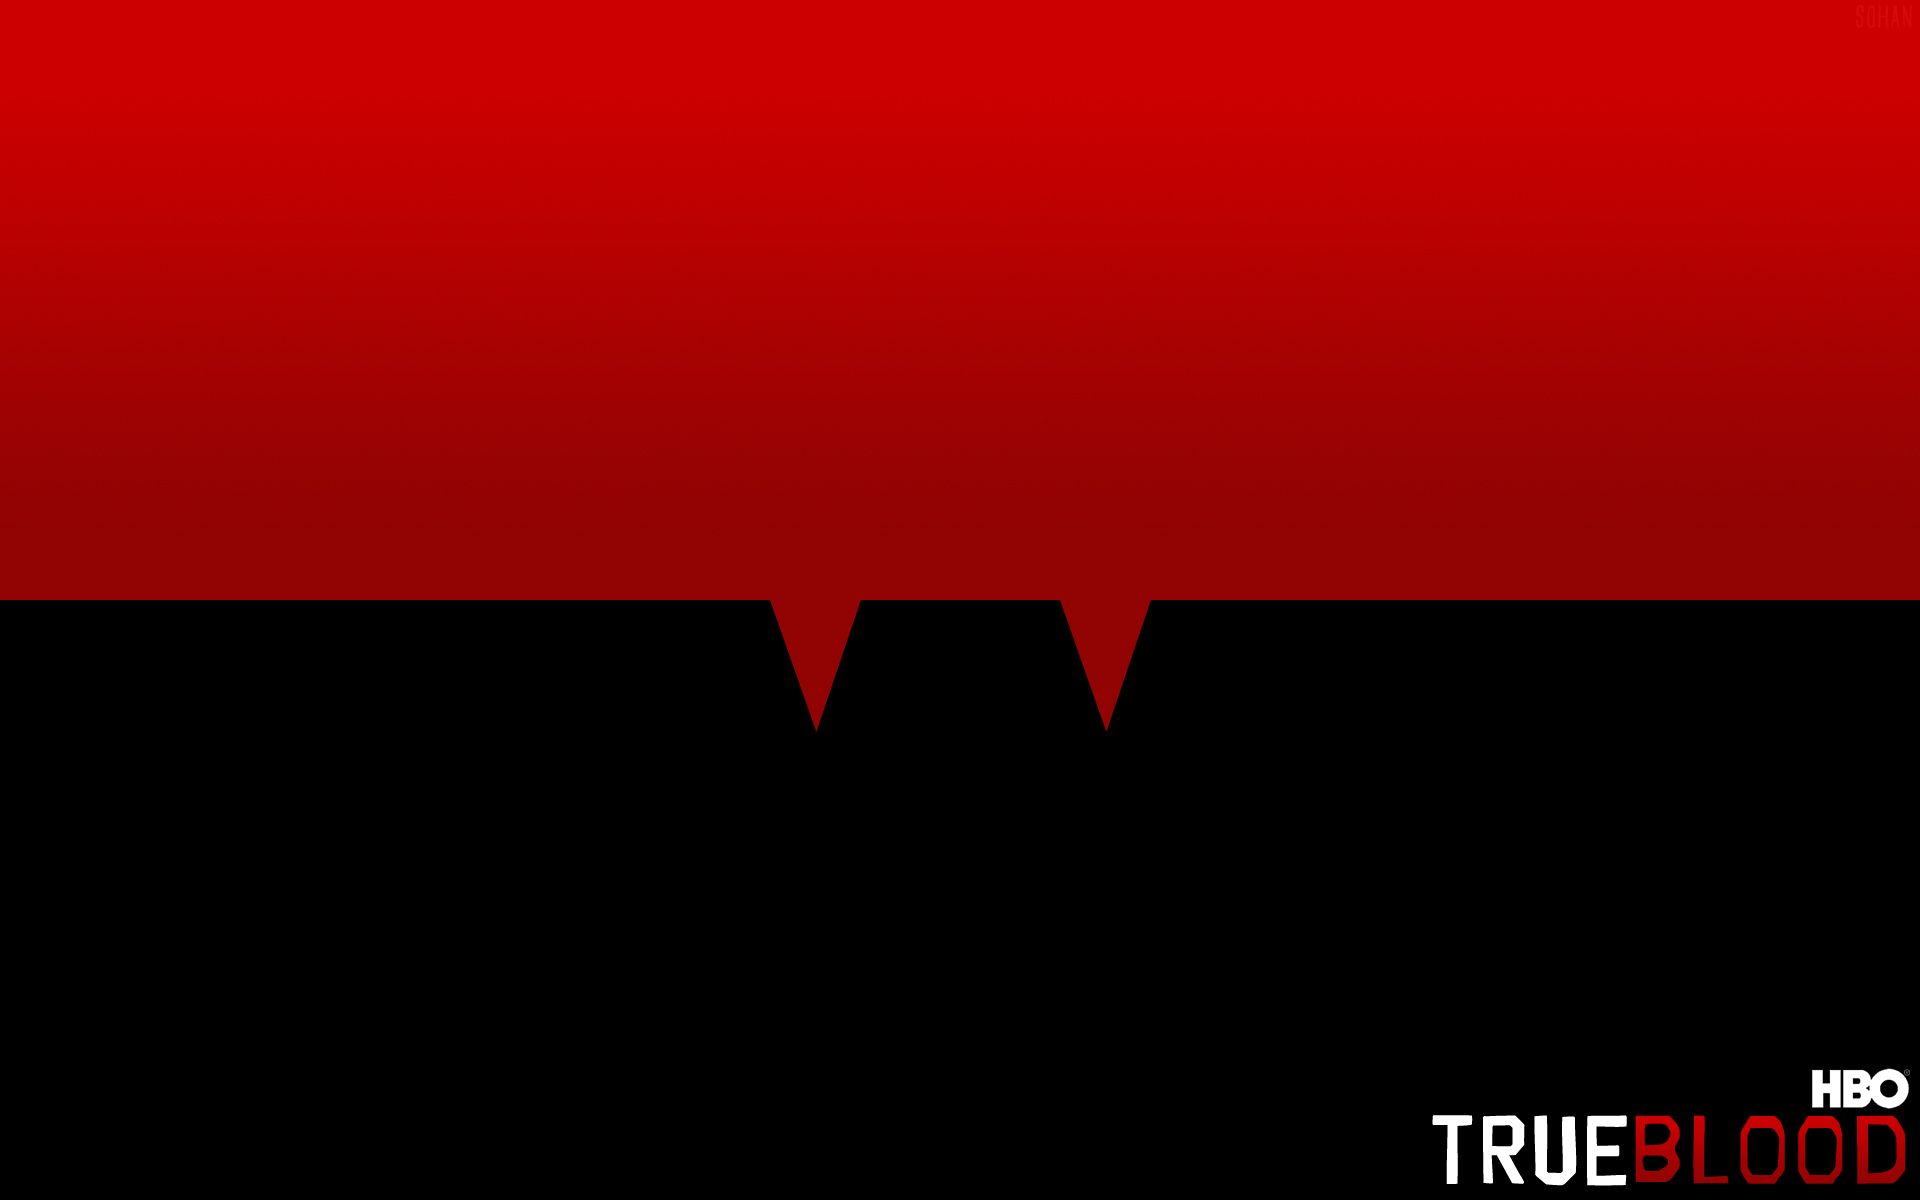 Free download True Blood Fangs Wallpaper True Blood Fangs Myspace [1920x1200] for your Desktop, Mobile & Tablet. Explore True Blood Background. True Blood Background, True Blood Wallpaper, True Blood Wallpaper